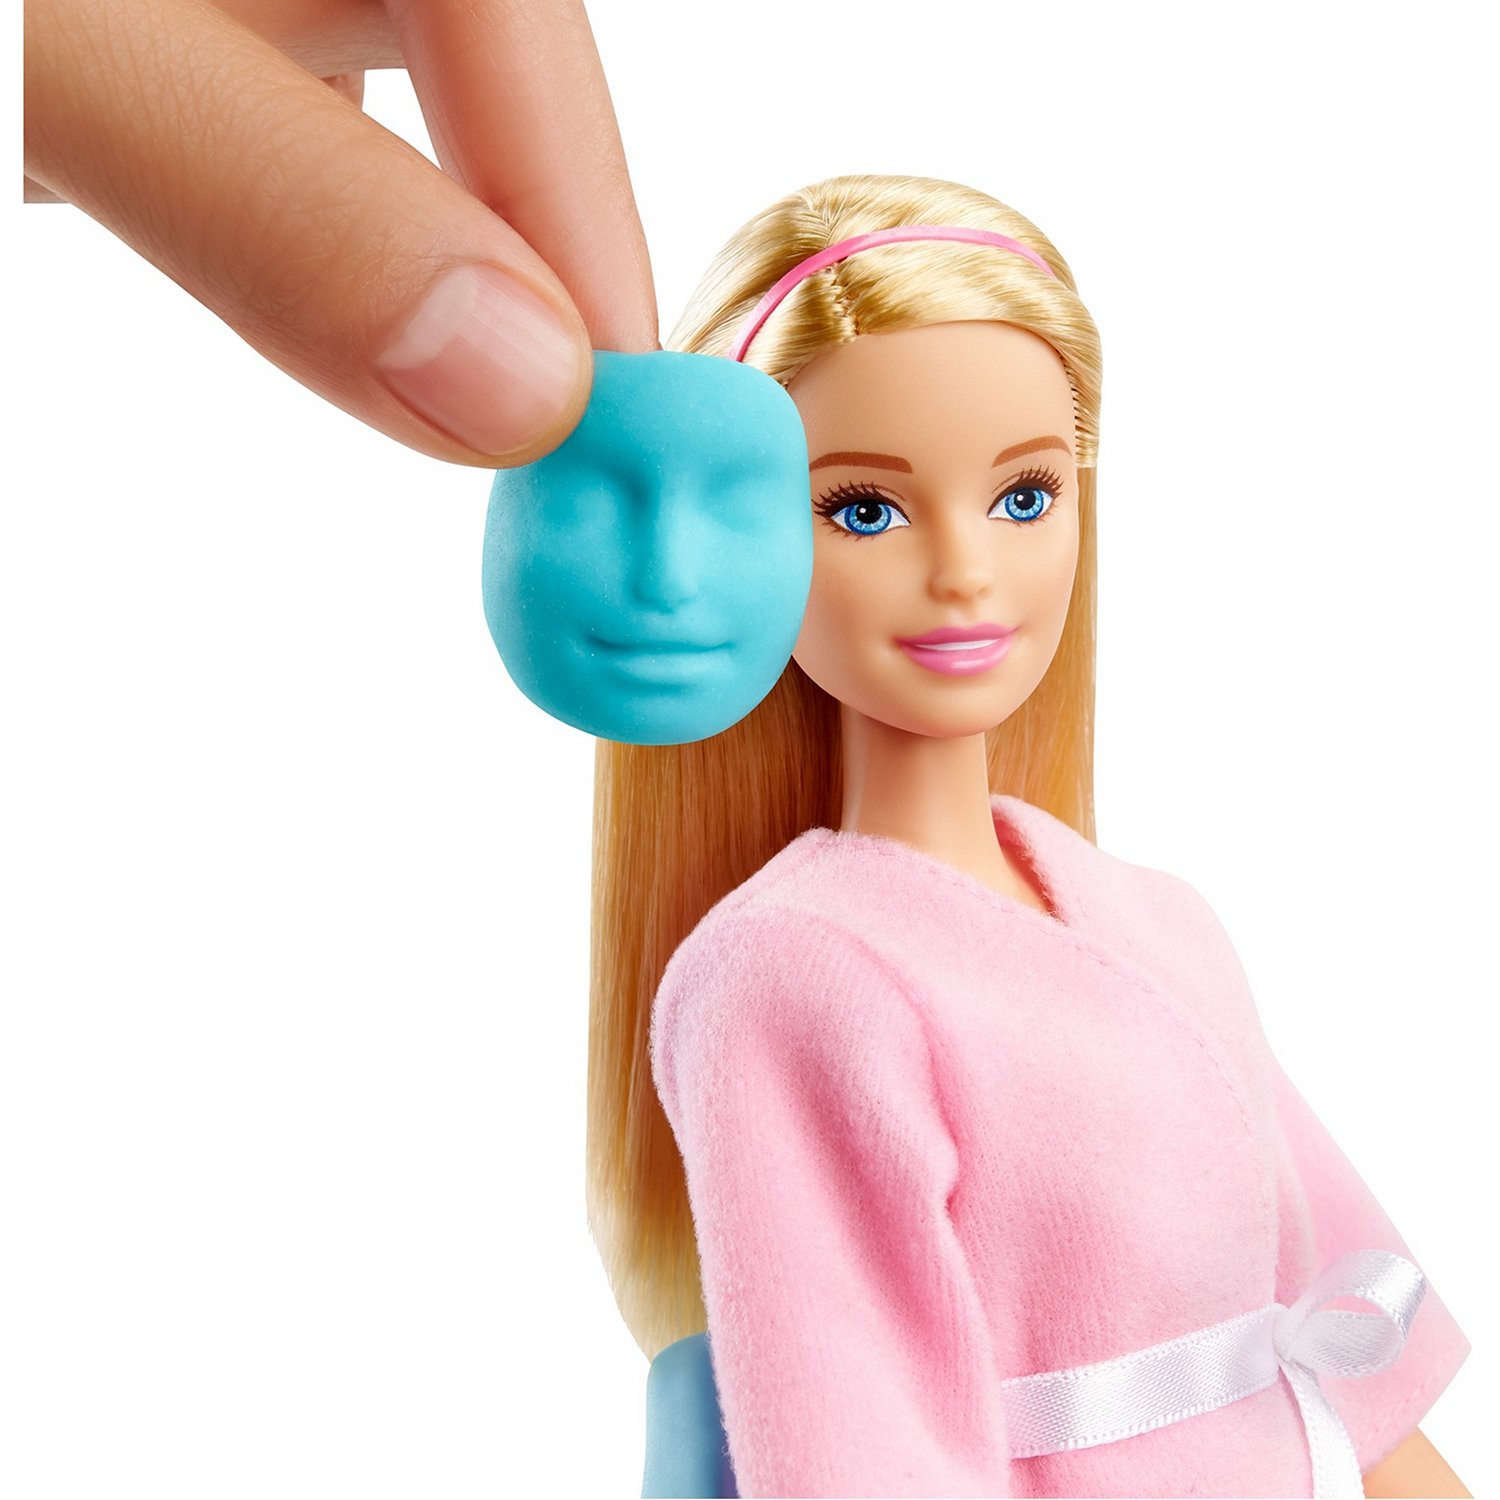 Набор игровой Barbie Оздоровительный Спа-центр GJR84